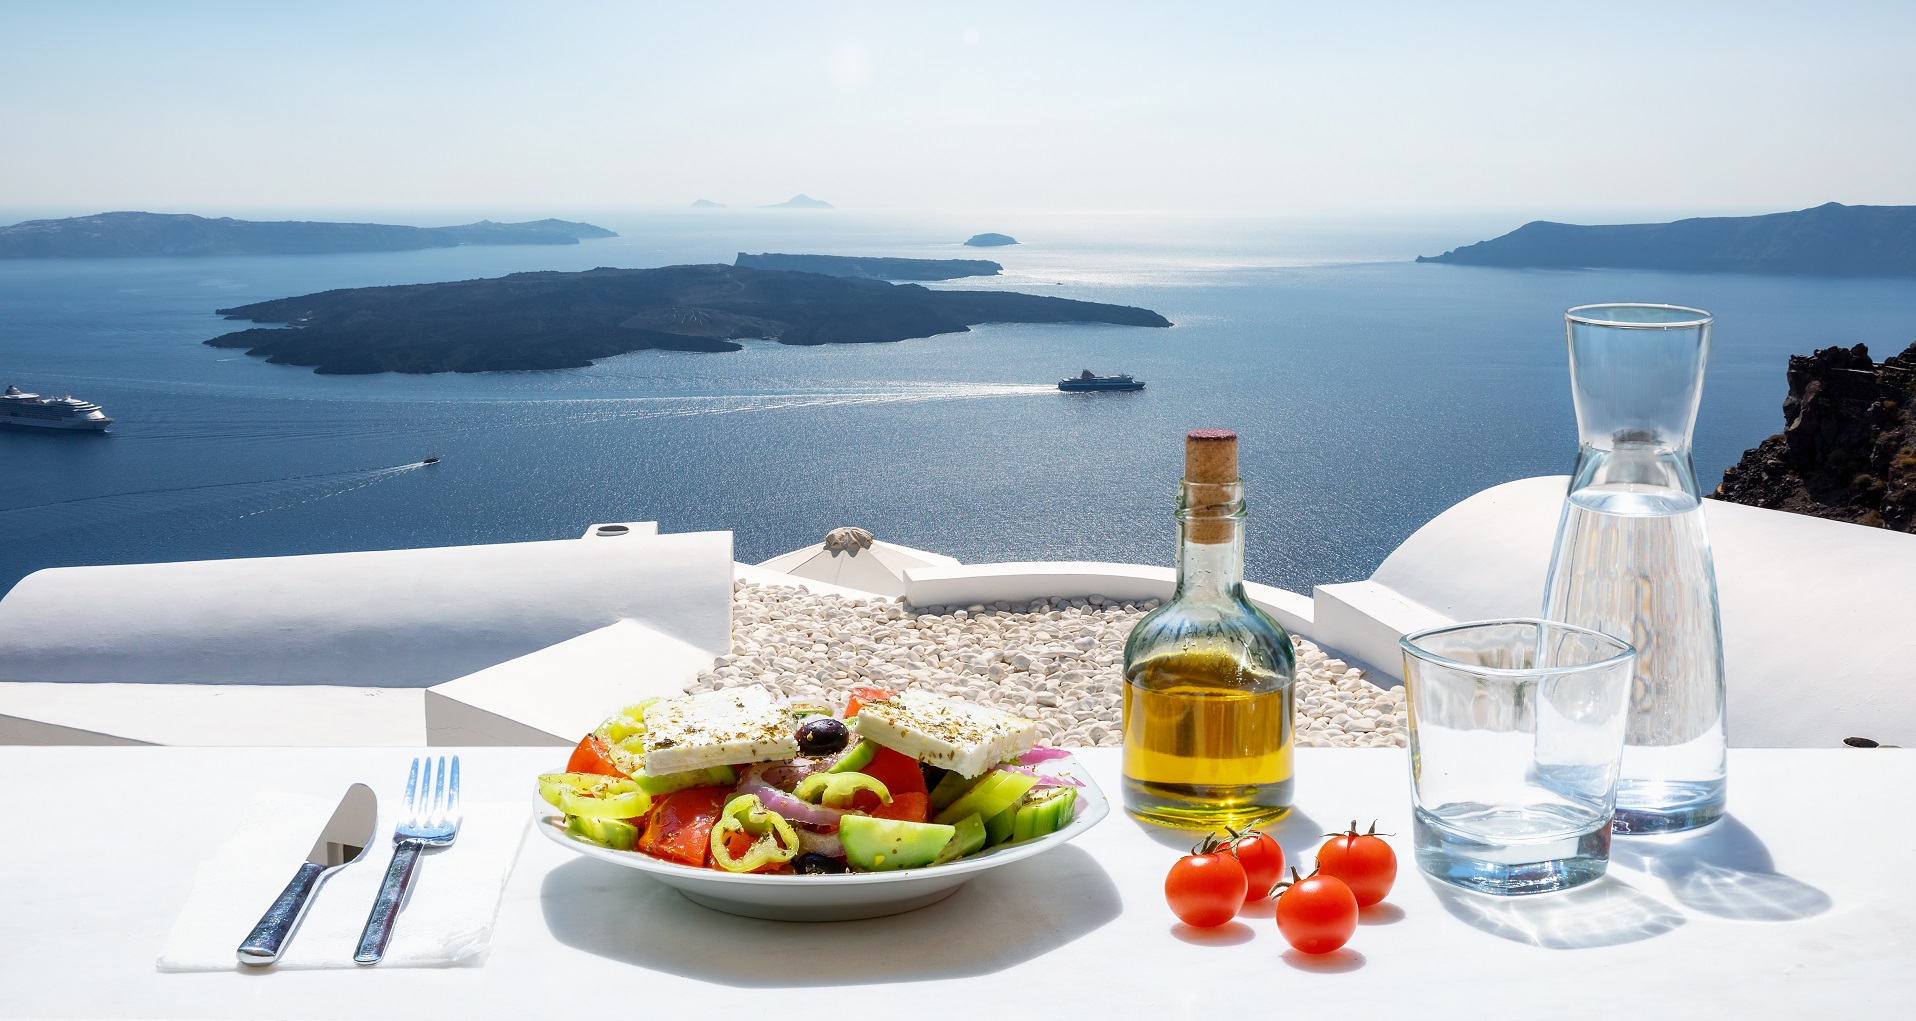 Repas typique grec avec vue imprenable sur la mer